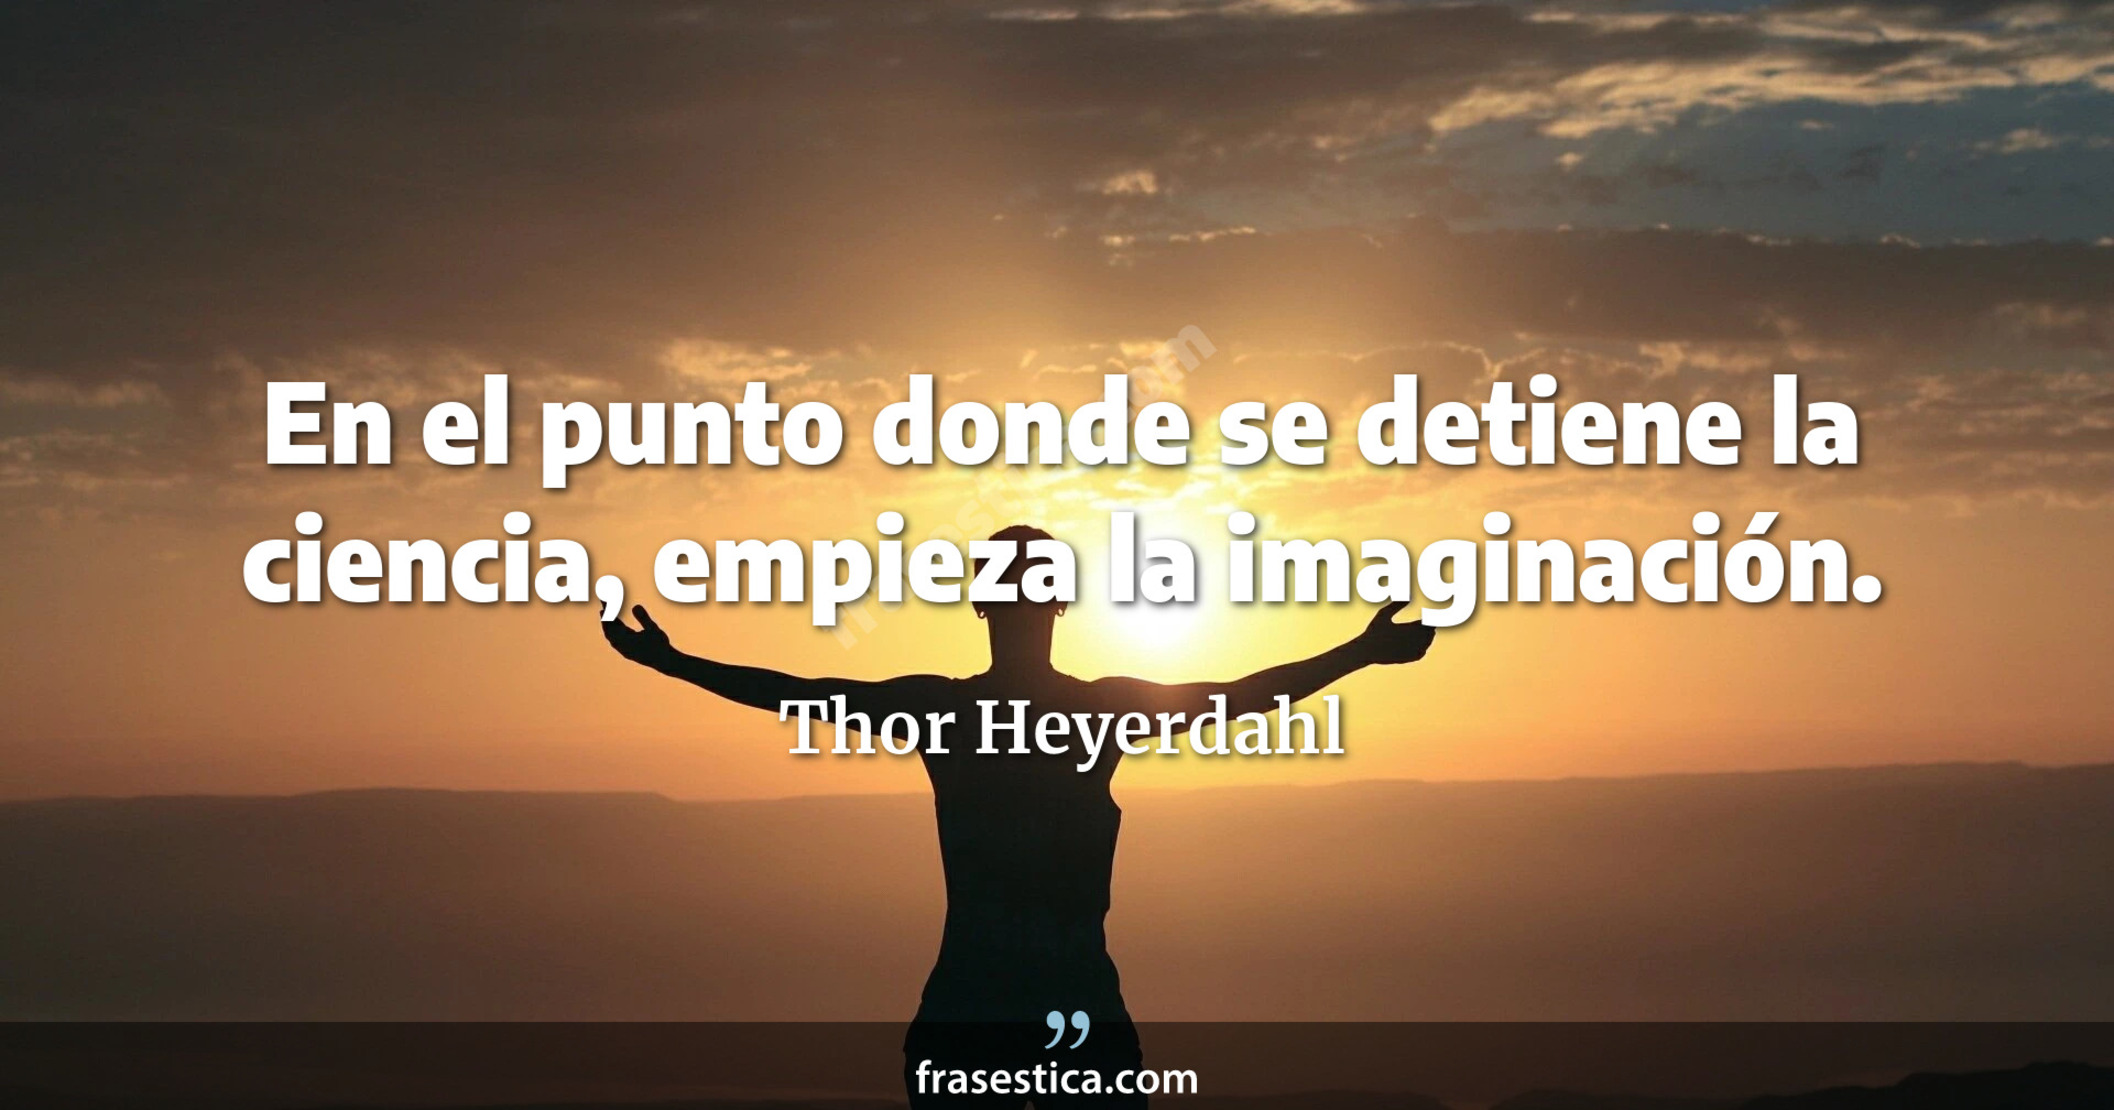 En el punto donde se detiene la ciencia, empieza la imaginación. - Thor Heyerdahl